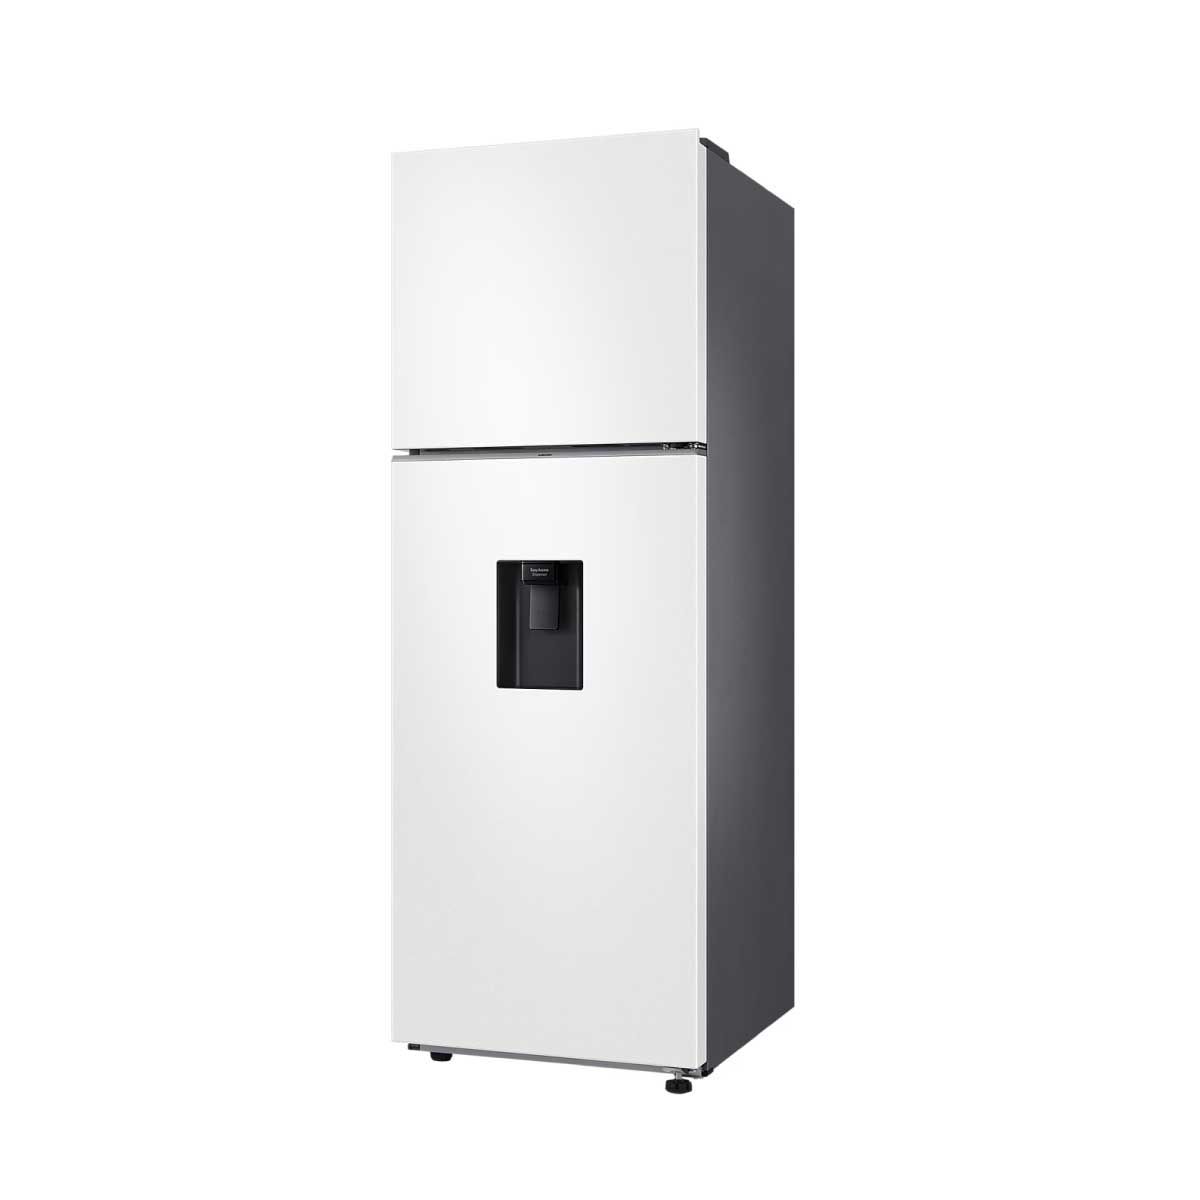 SAMSUNG ตู้เย็น 2 ประตู 12.3Q มีที่กดน้ำ สีขาว/ขาว RT35CB5744C1ST